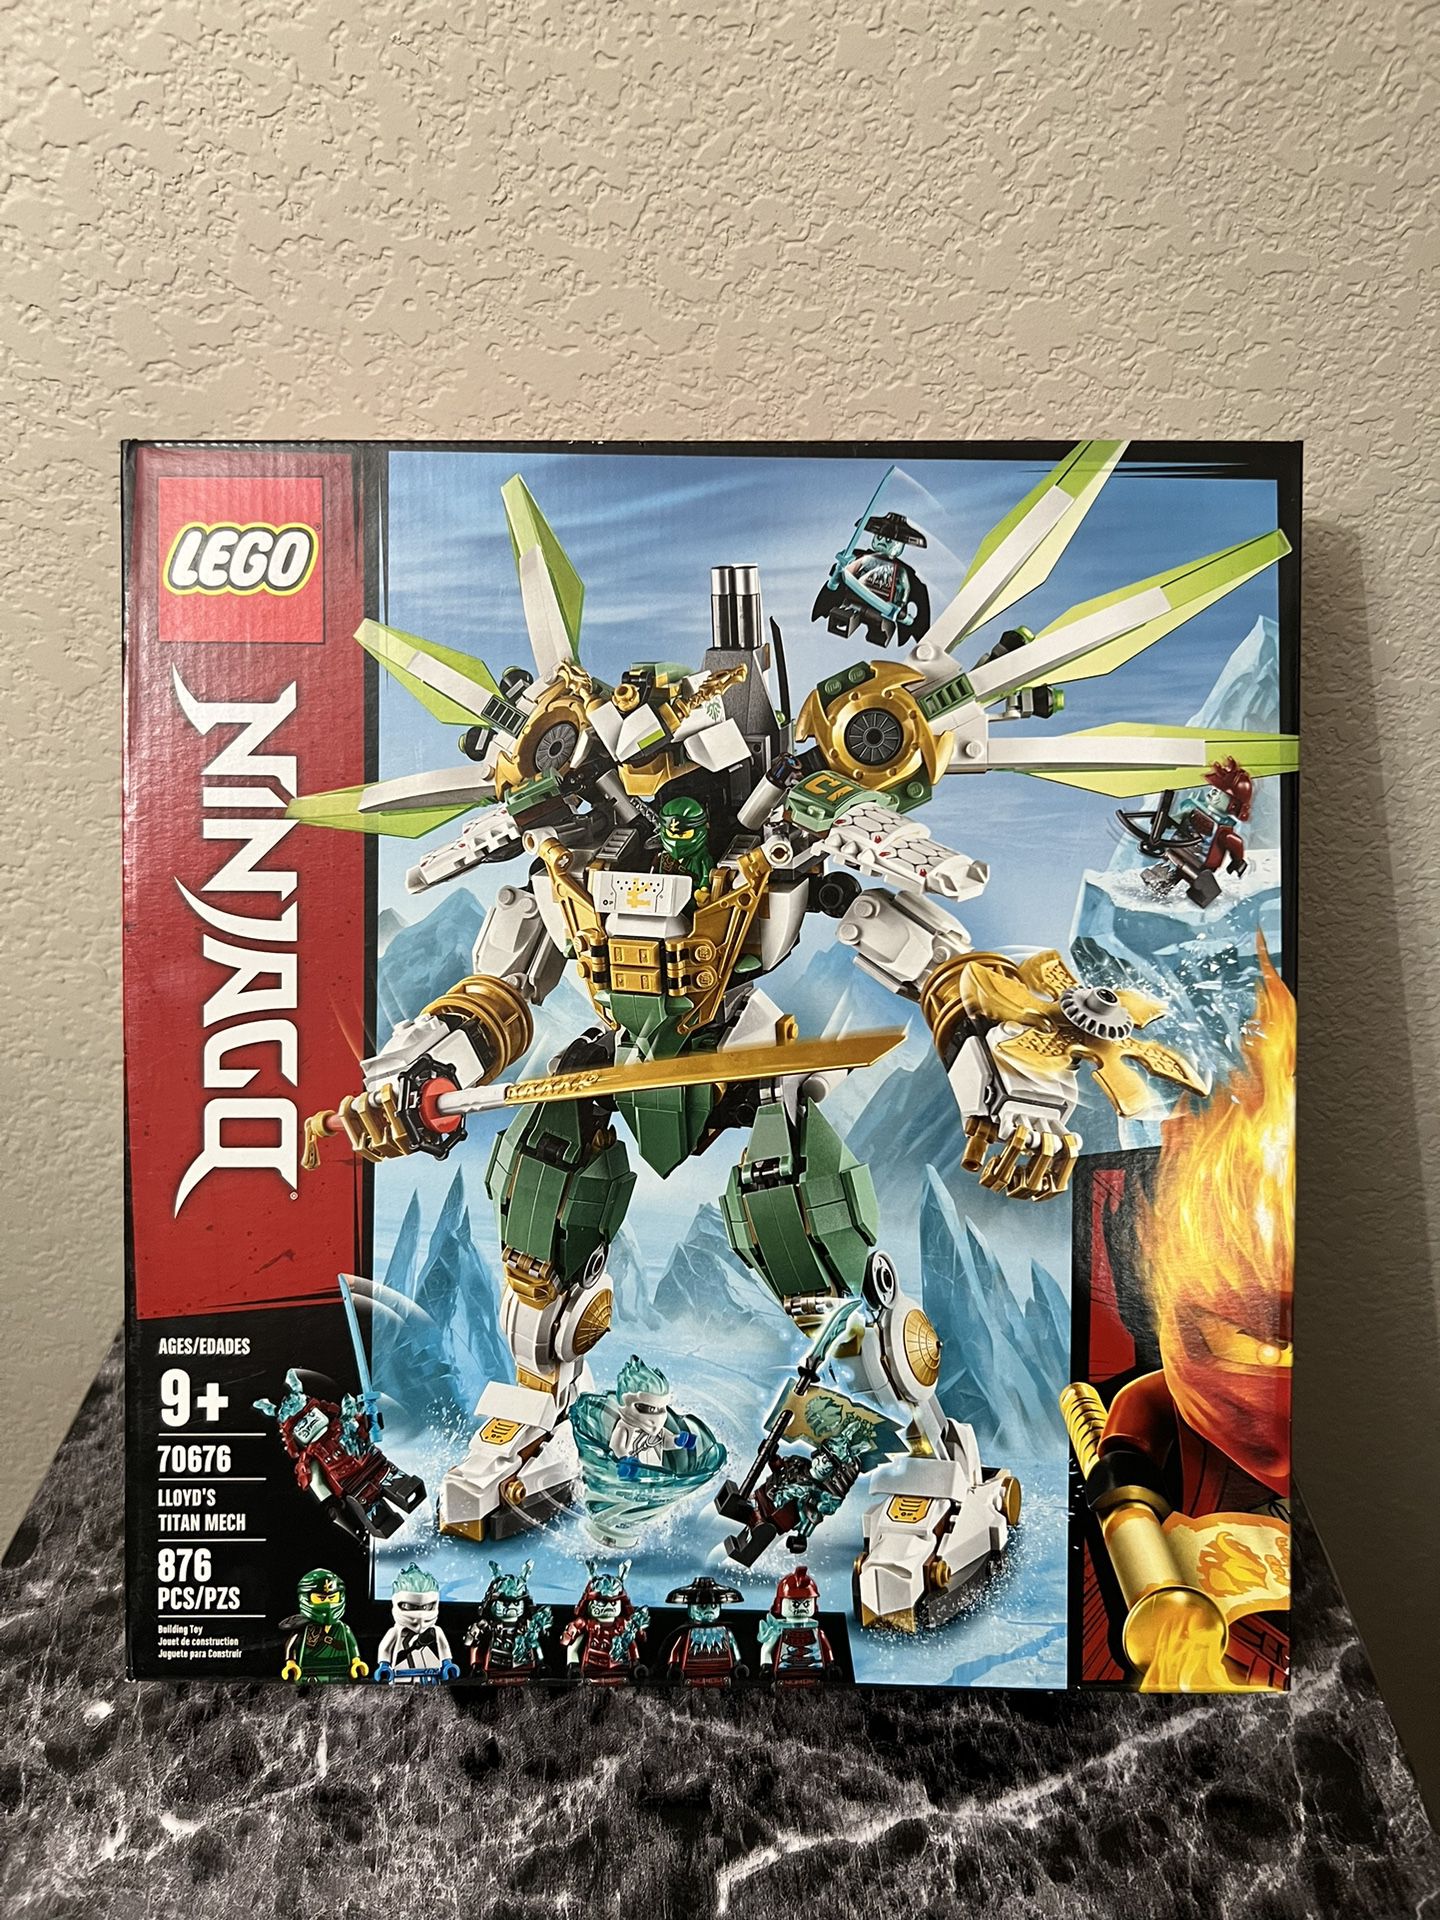 LEGO Ninjago Titan Mech (70676, New in Box) for Vegas, NV - OfferUp